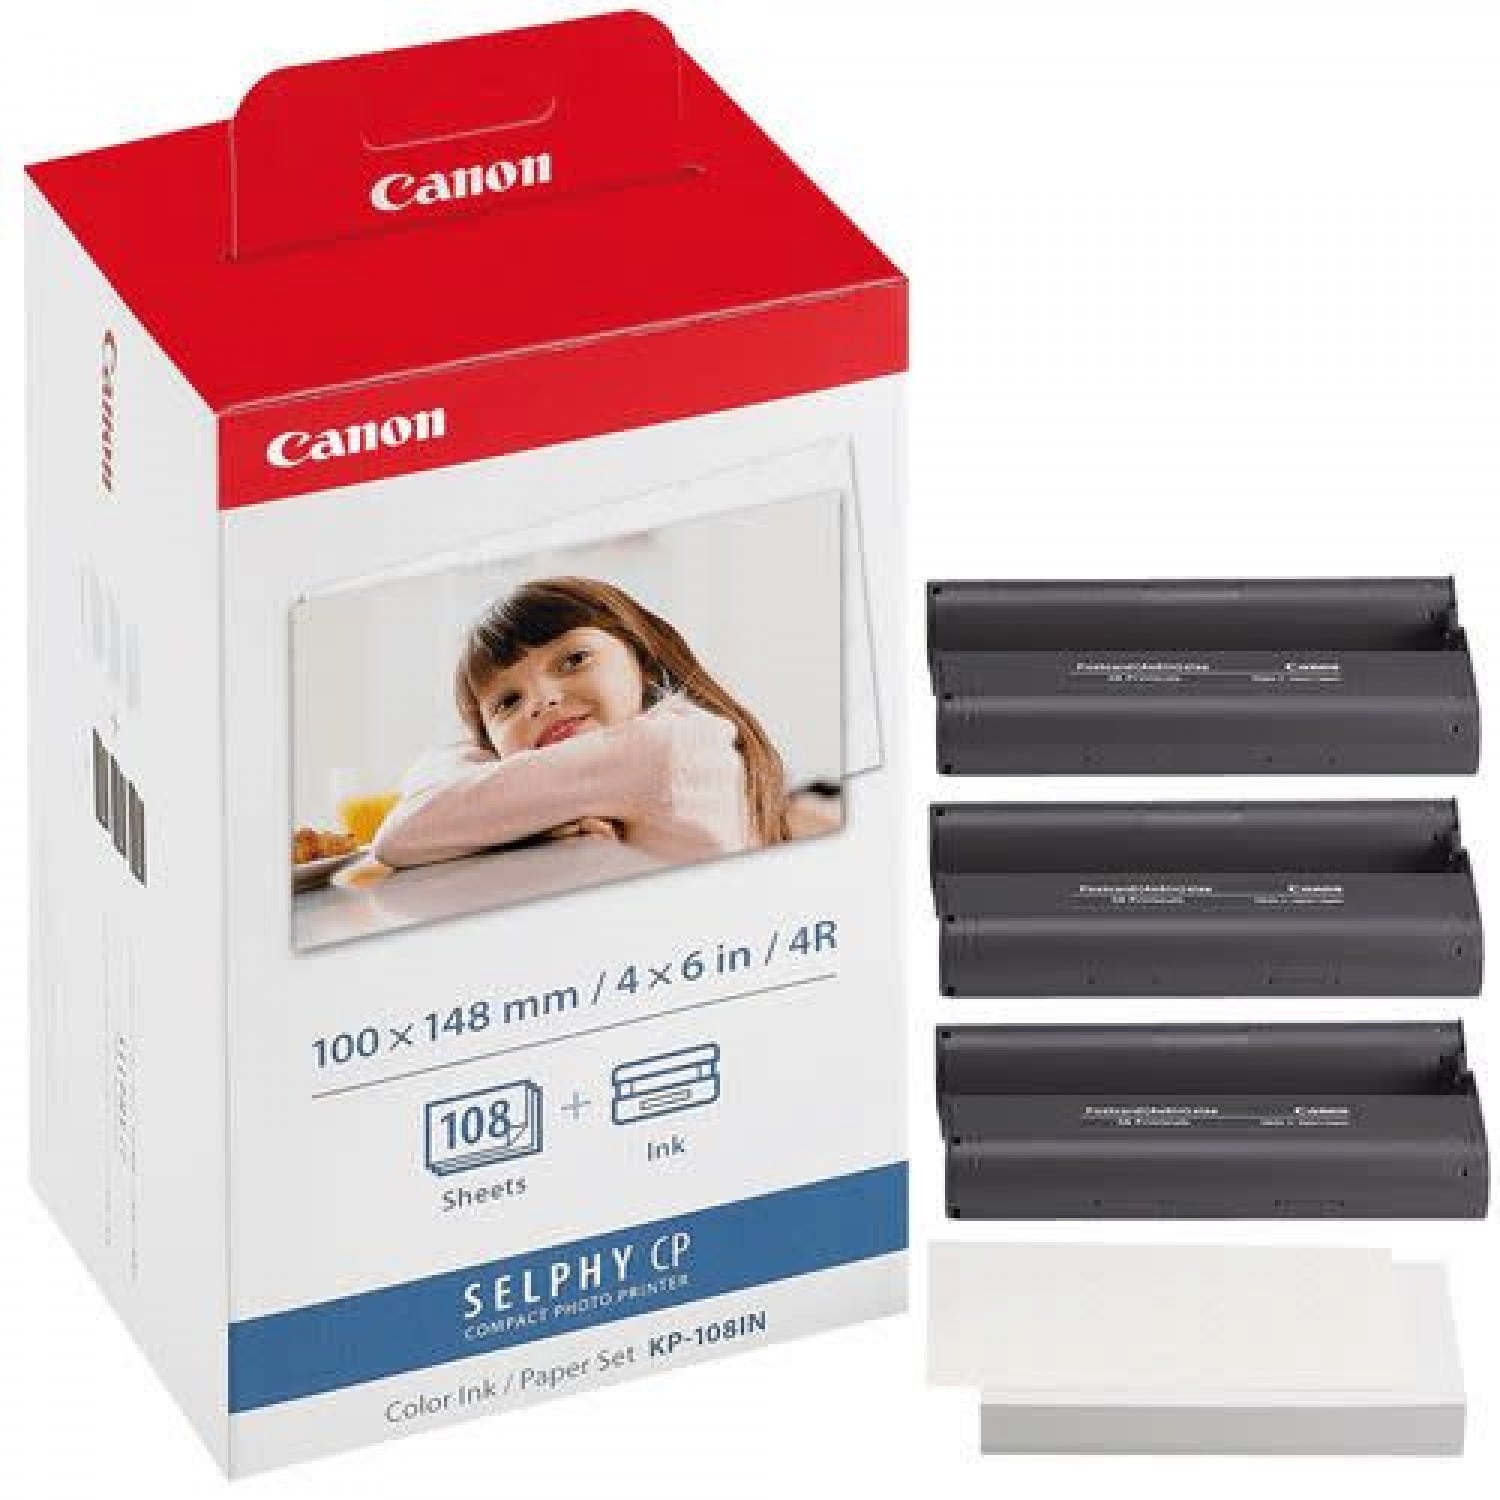 CANON KP-108IN - Kit Papier et Encre pour Imprimante Selphy CP-800